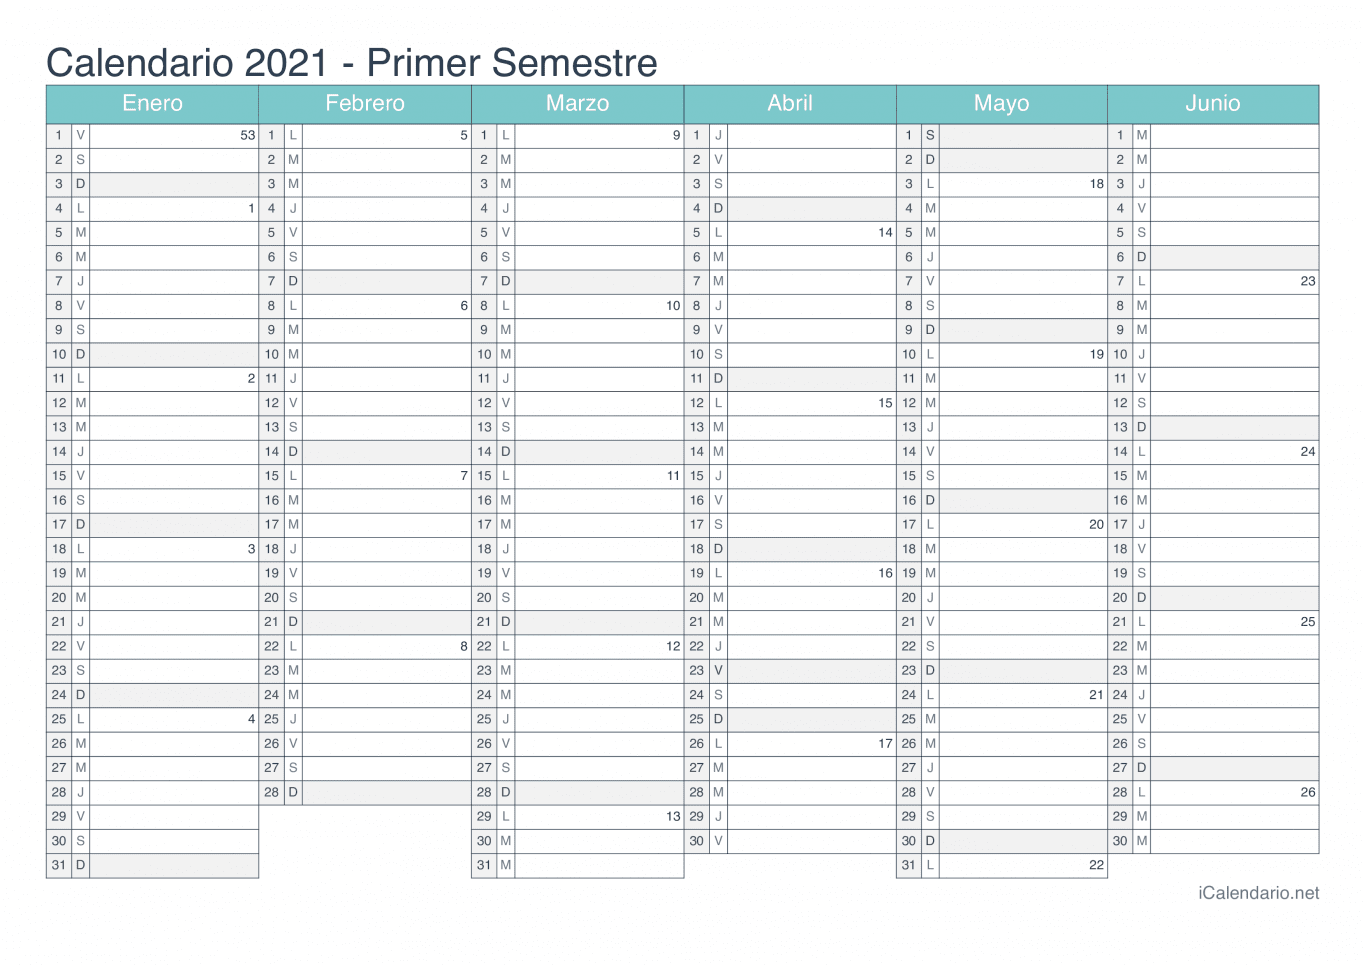 Calendario por semestre com números da semana 2021 - Turquesa